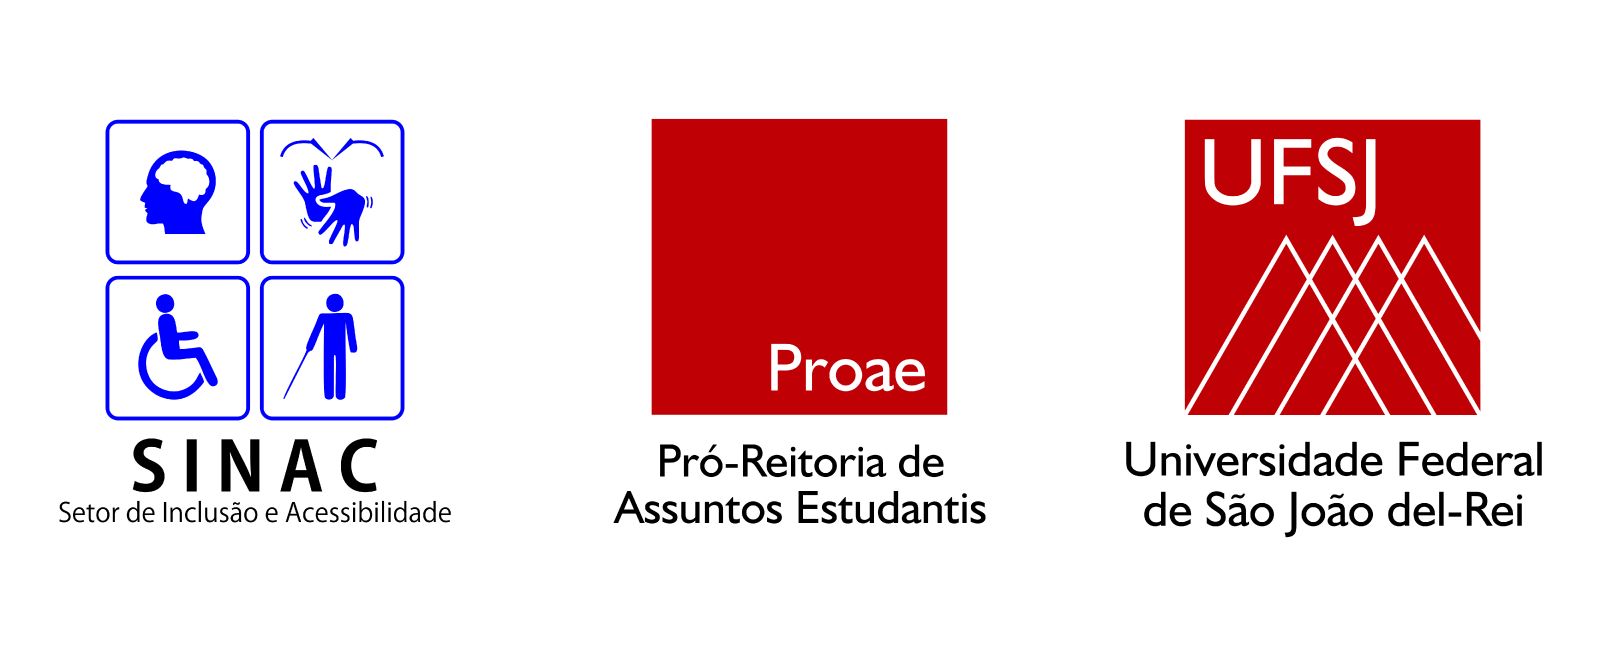 Logotipo do SINAC - Setor de Incluso e Acessibilidade, da PROAE - Pr-Reitoria de Assuntos Estudantis e da UFSJ - Universidade Federal de So Joo del Rei